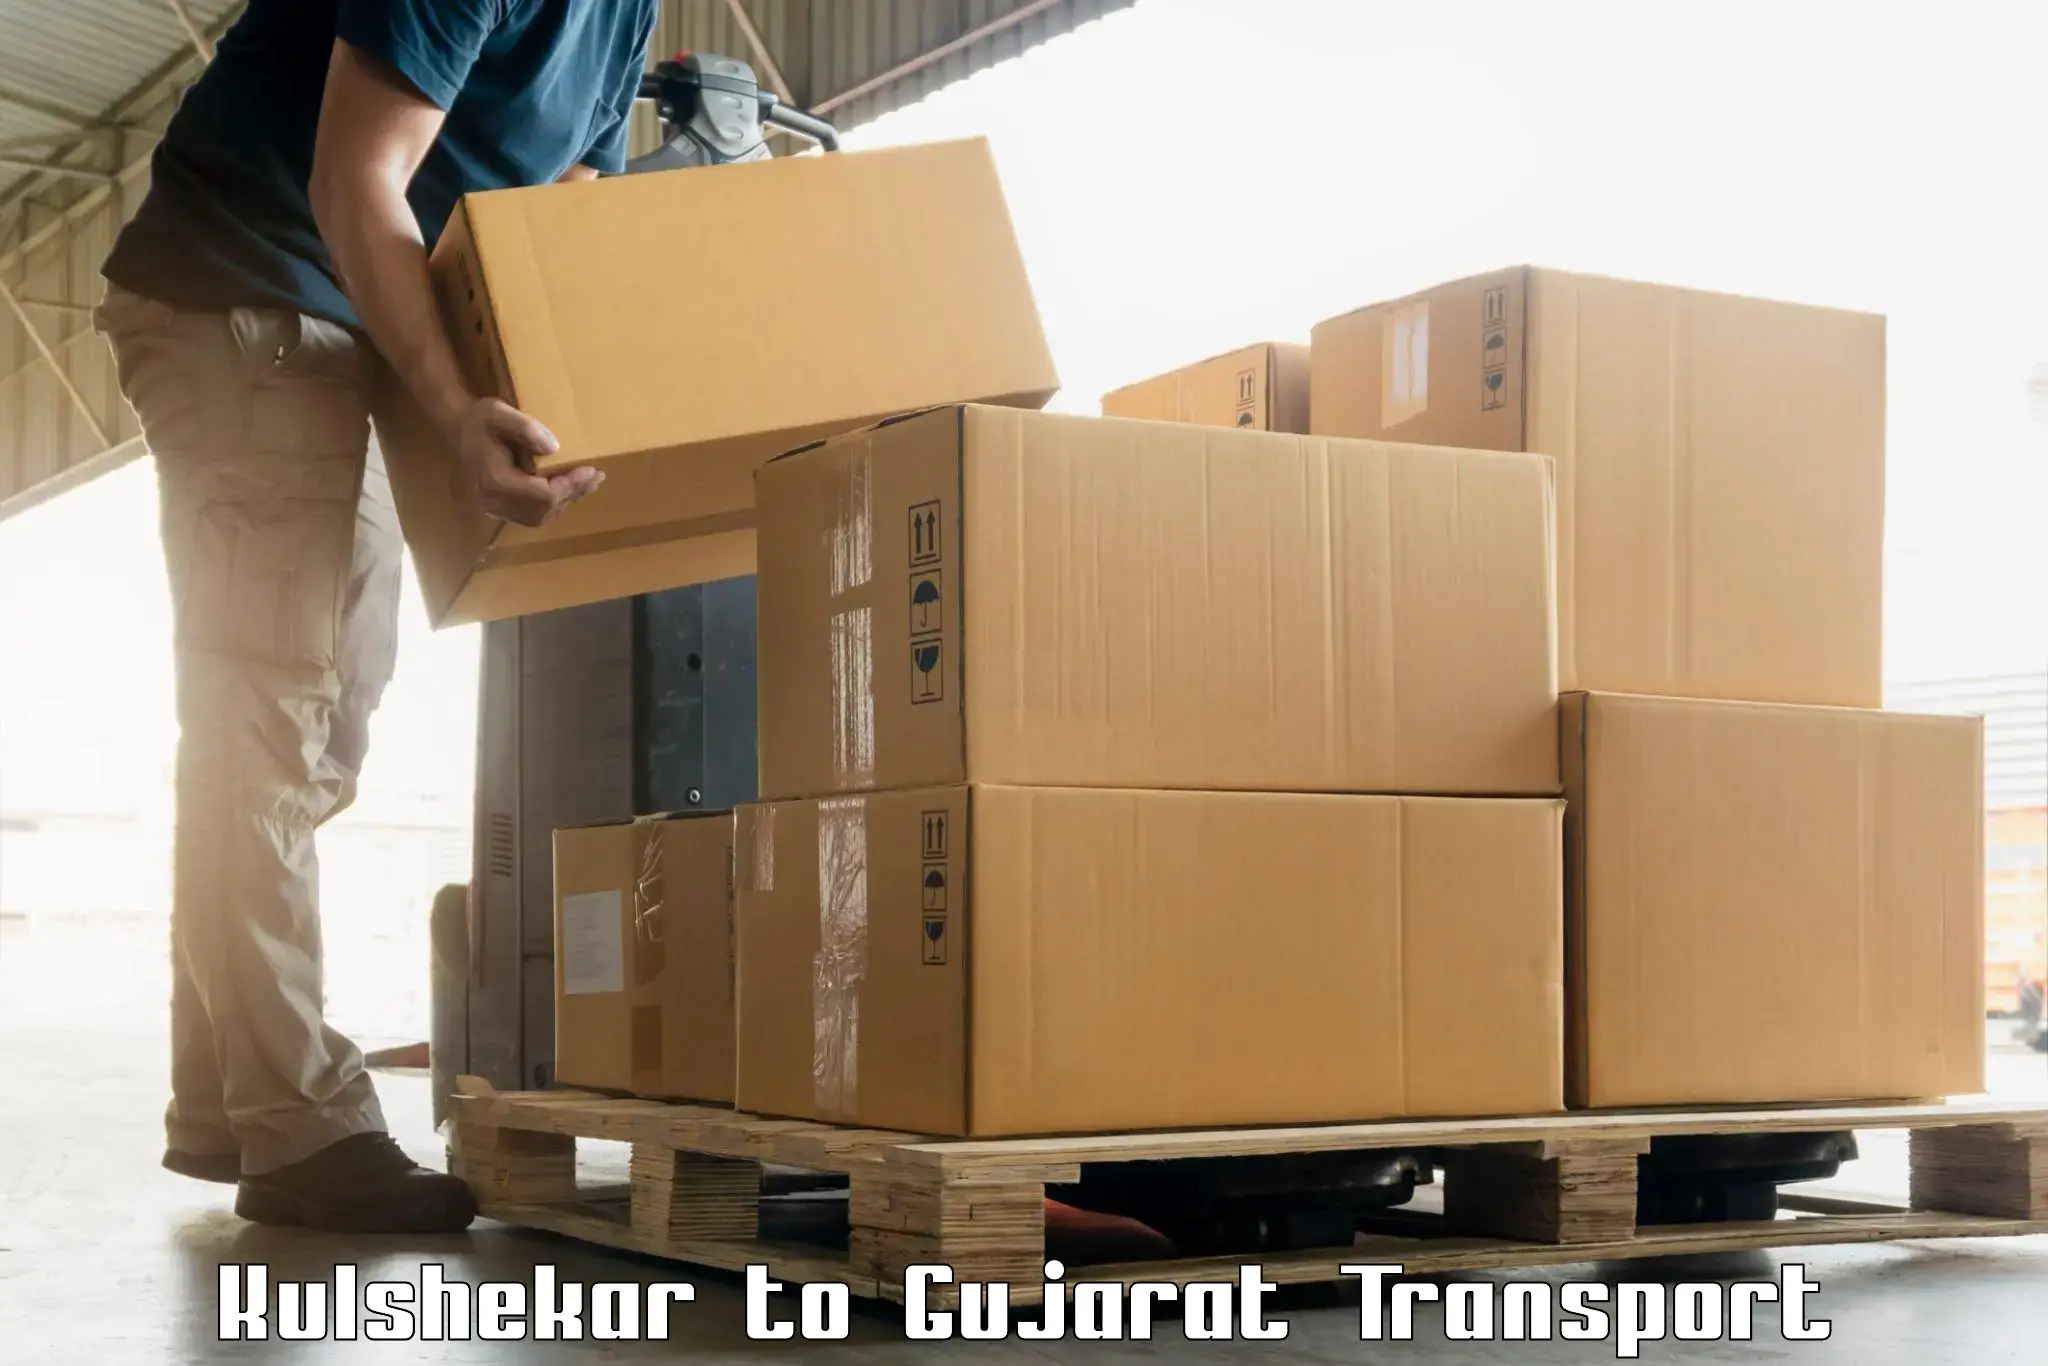 Furniture transport service Kulshekar to Karjan